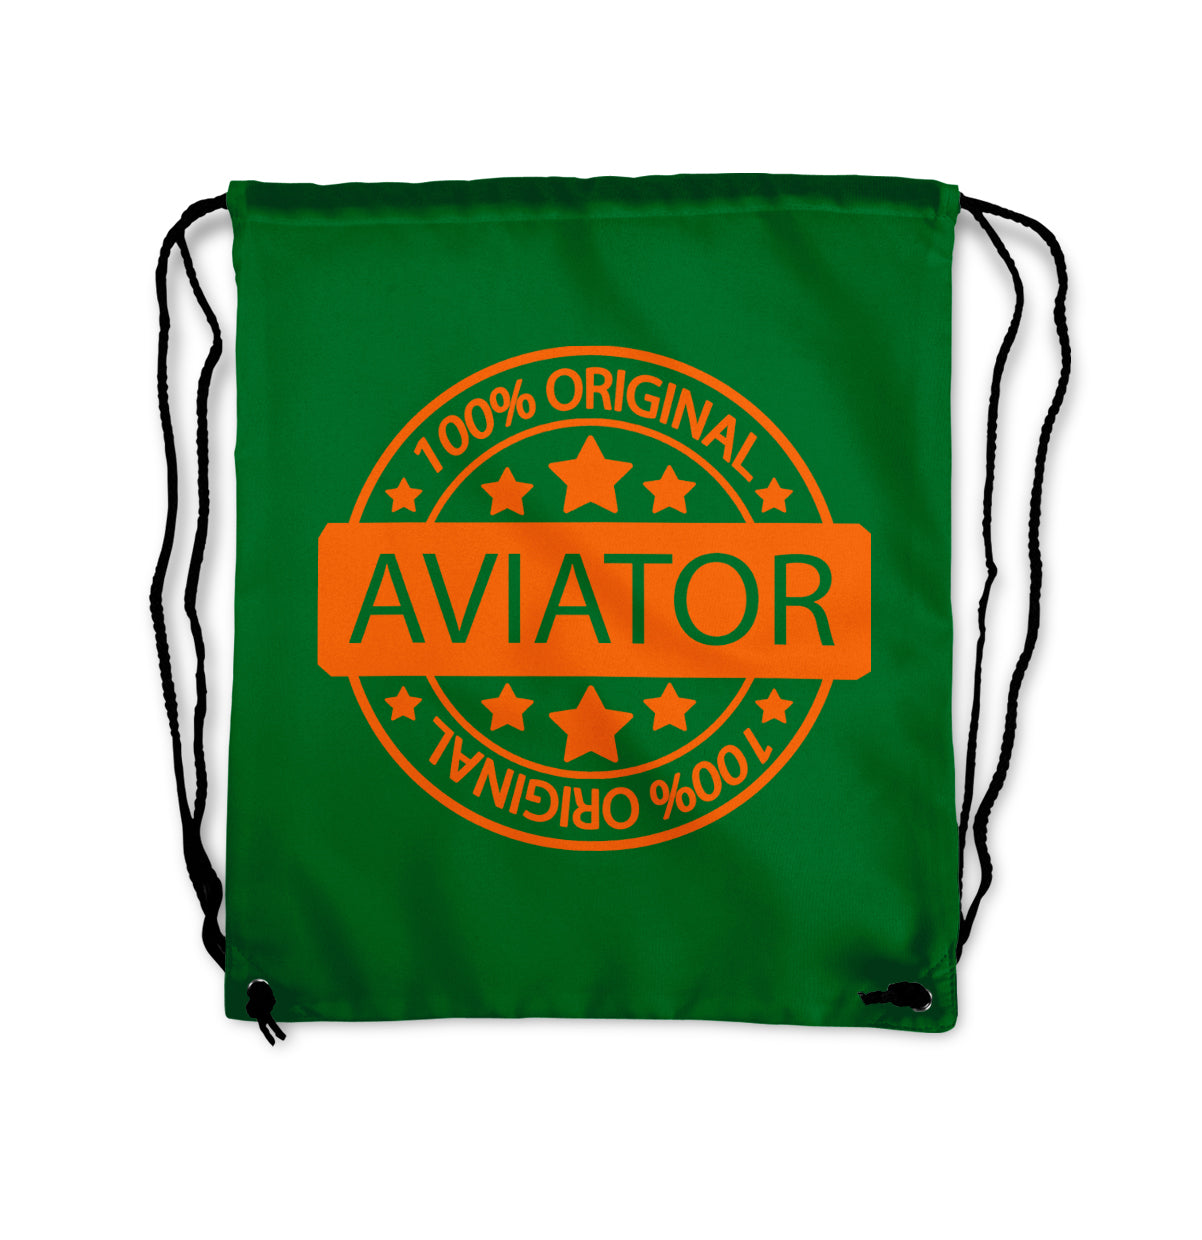 100 Original Aviator Designed Drawstring Bags